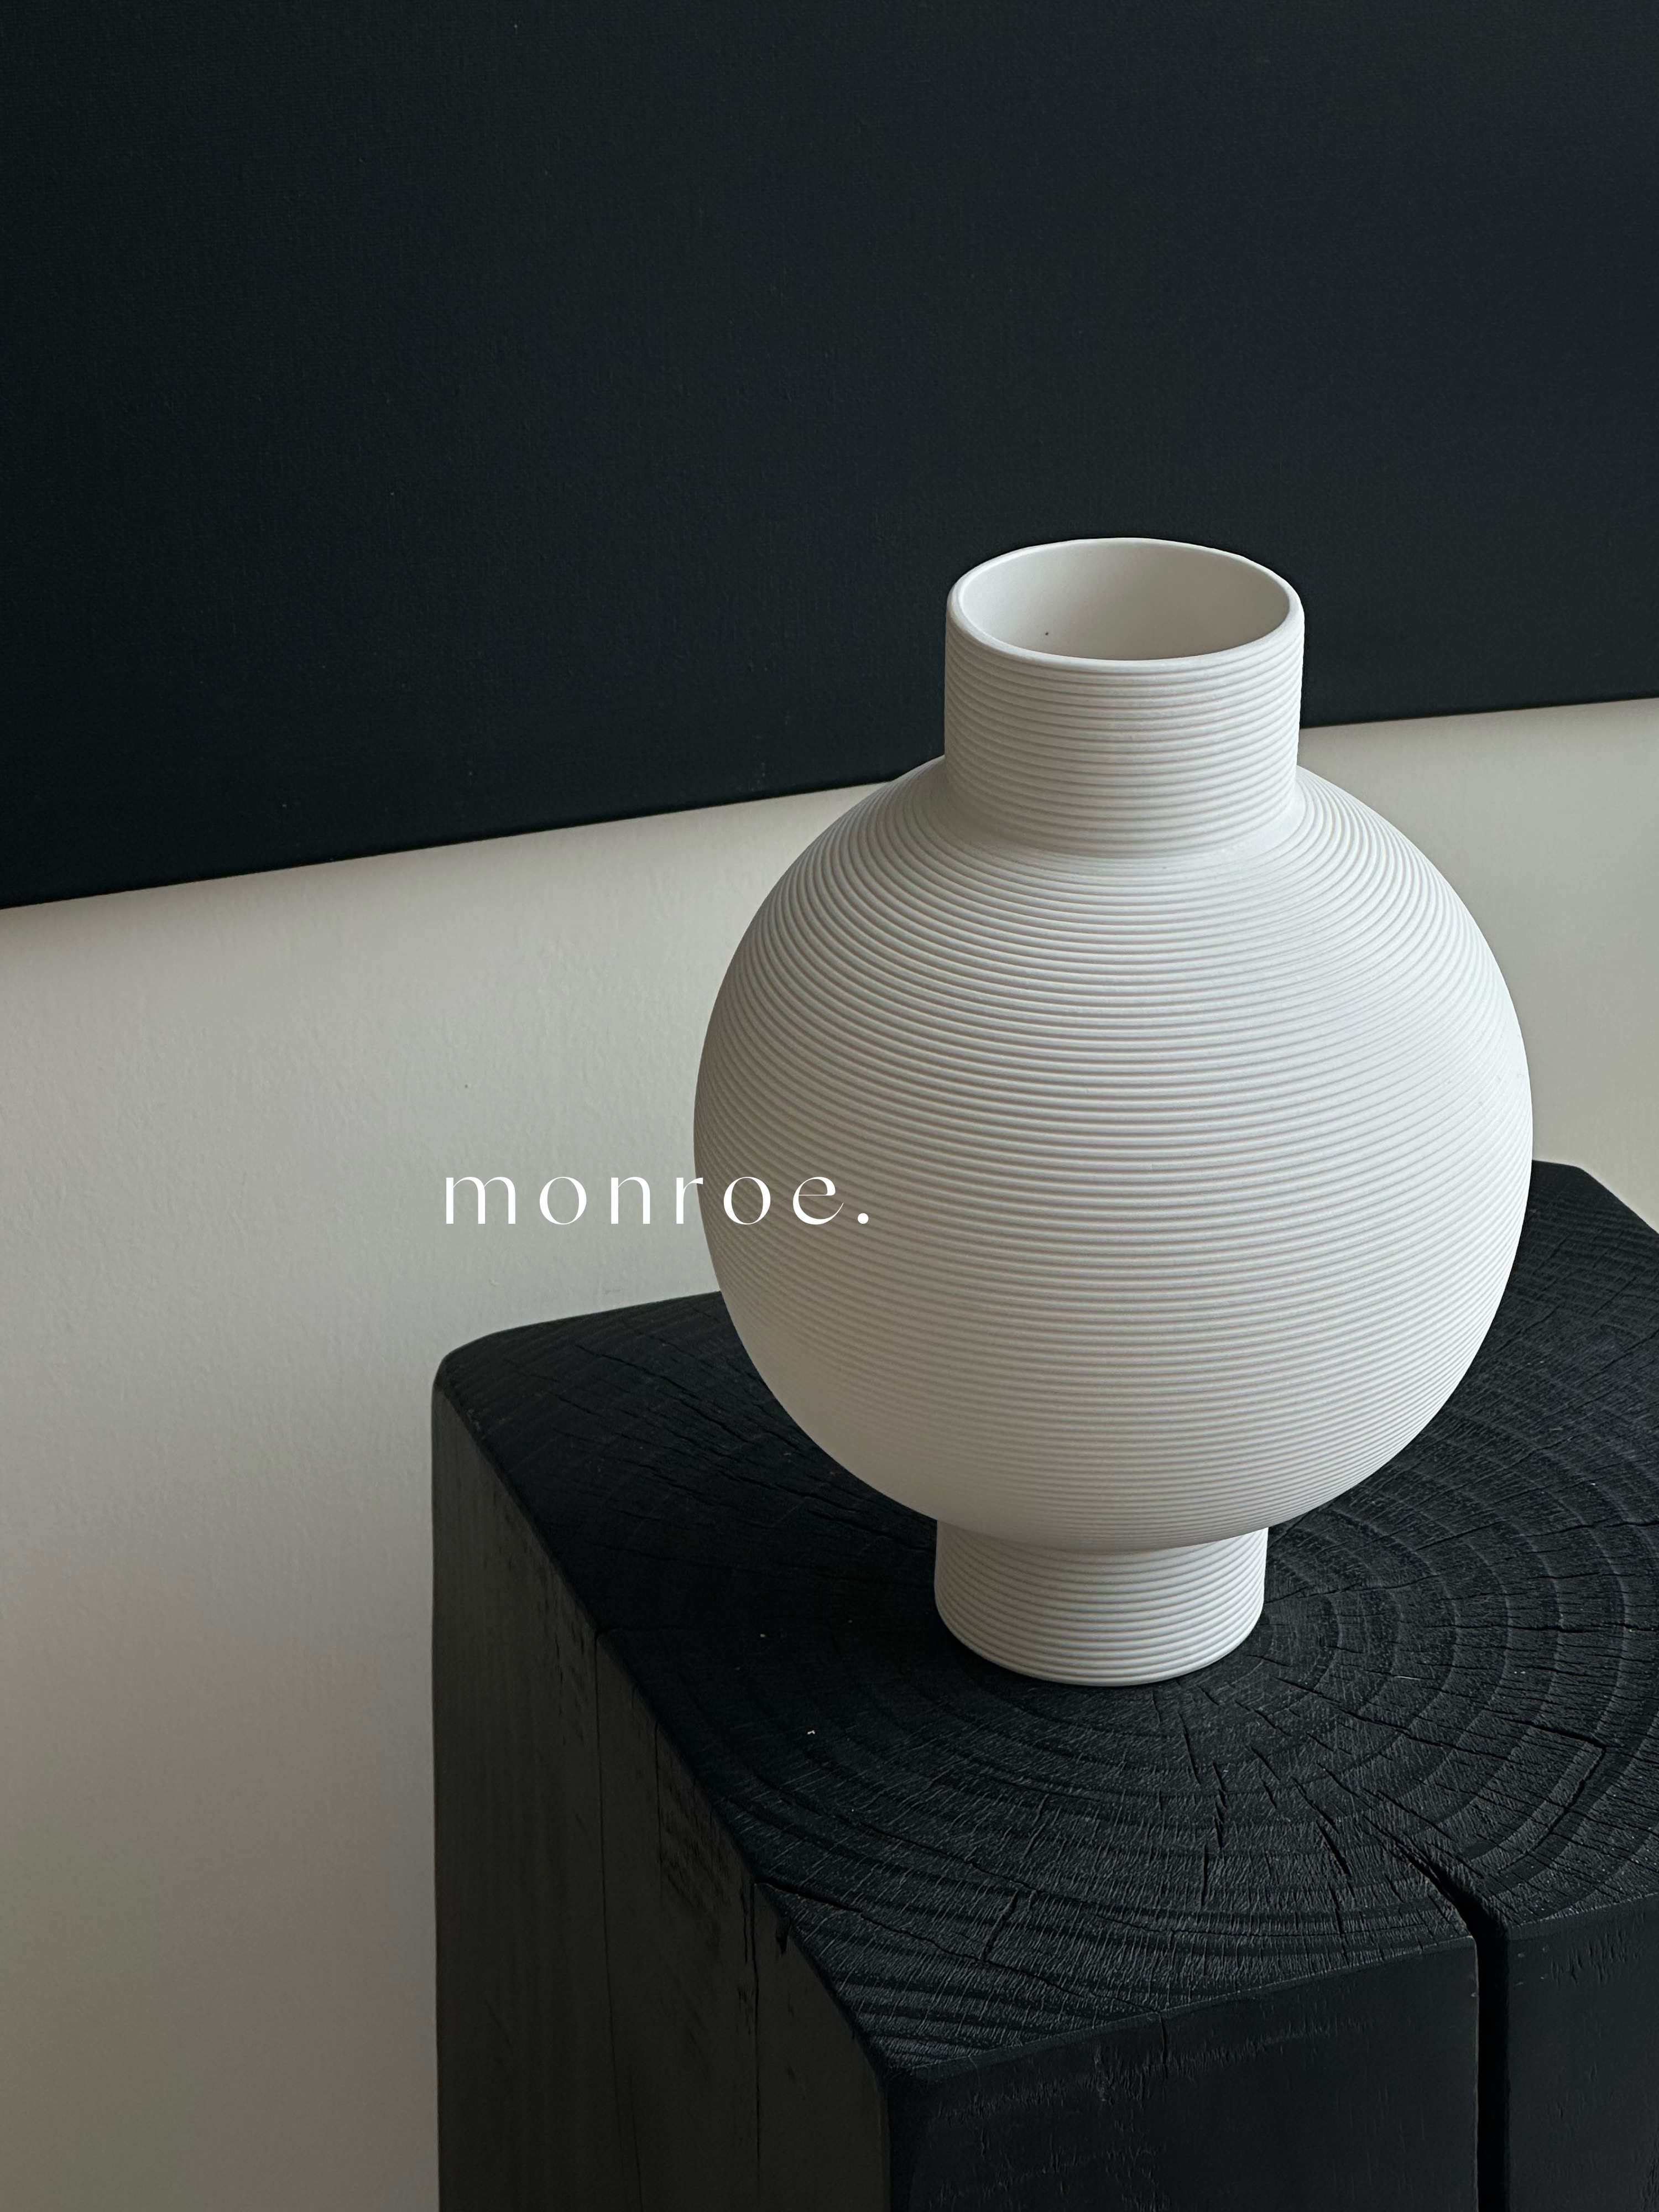 典雅簡約素白陶瓷花瓶光滑內釉易清洗亦可水培輕鬆點綴居家風格